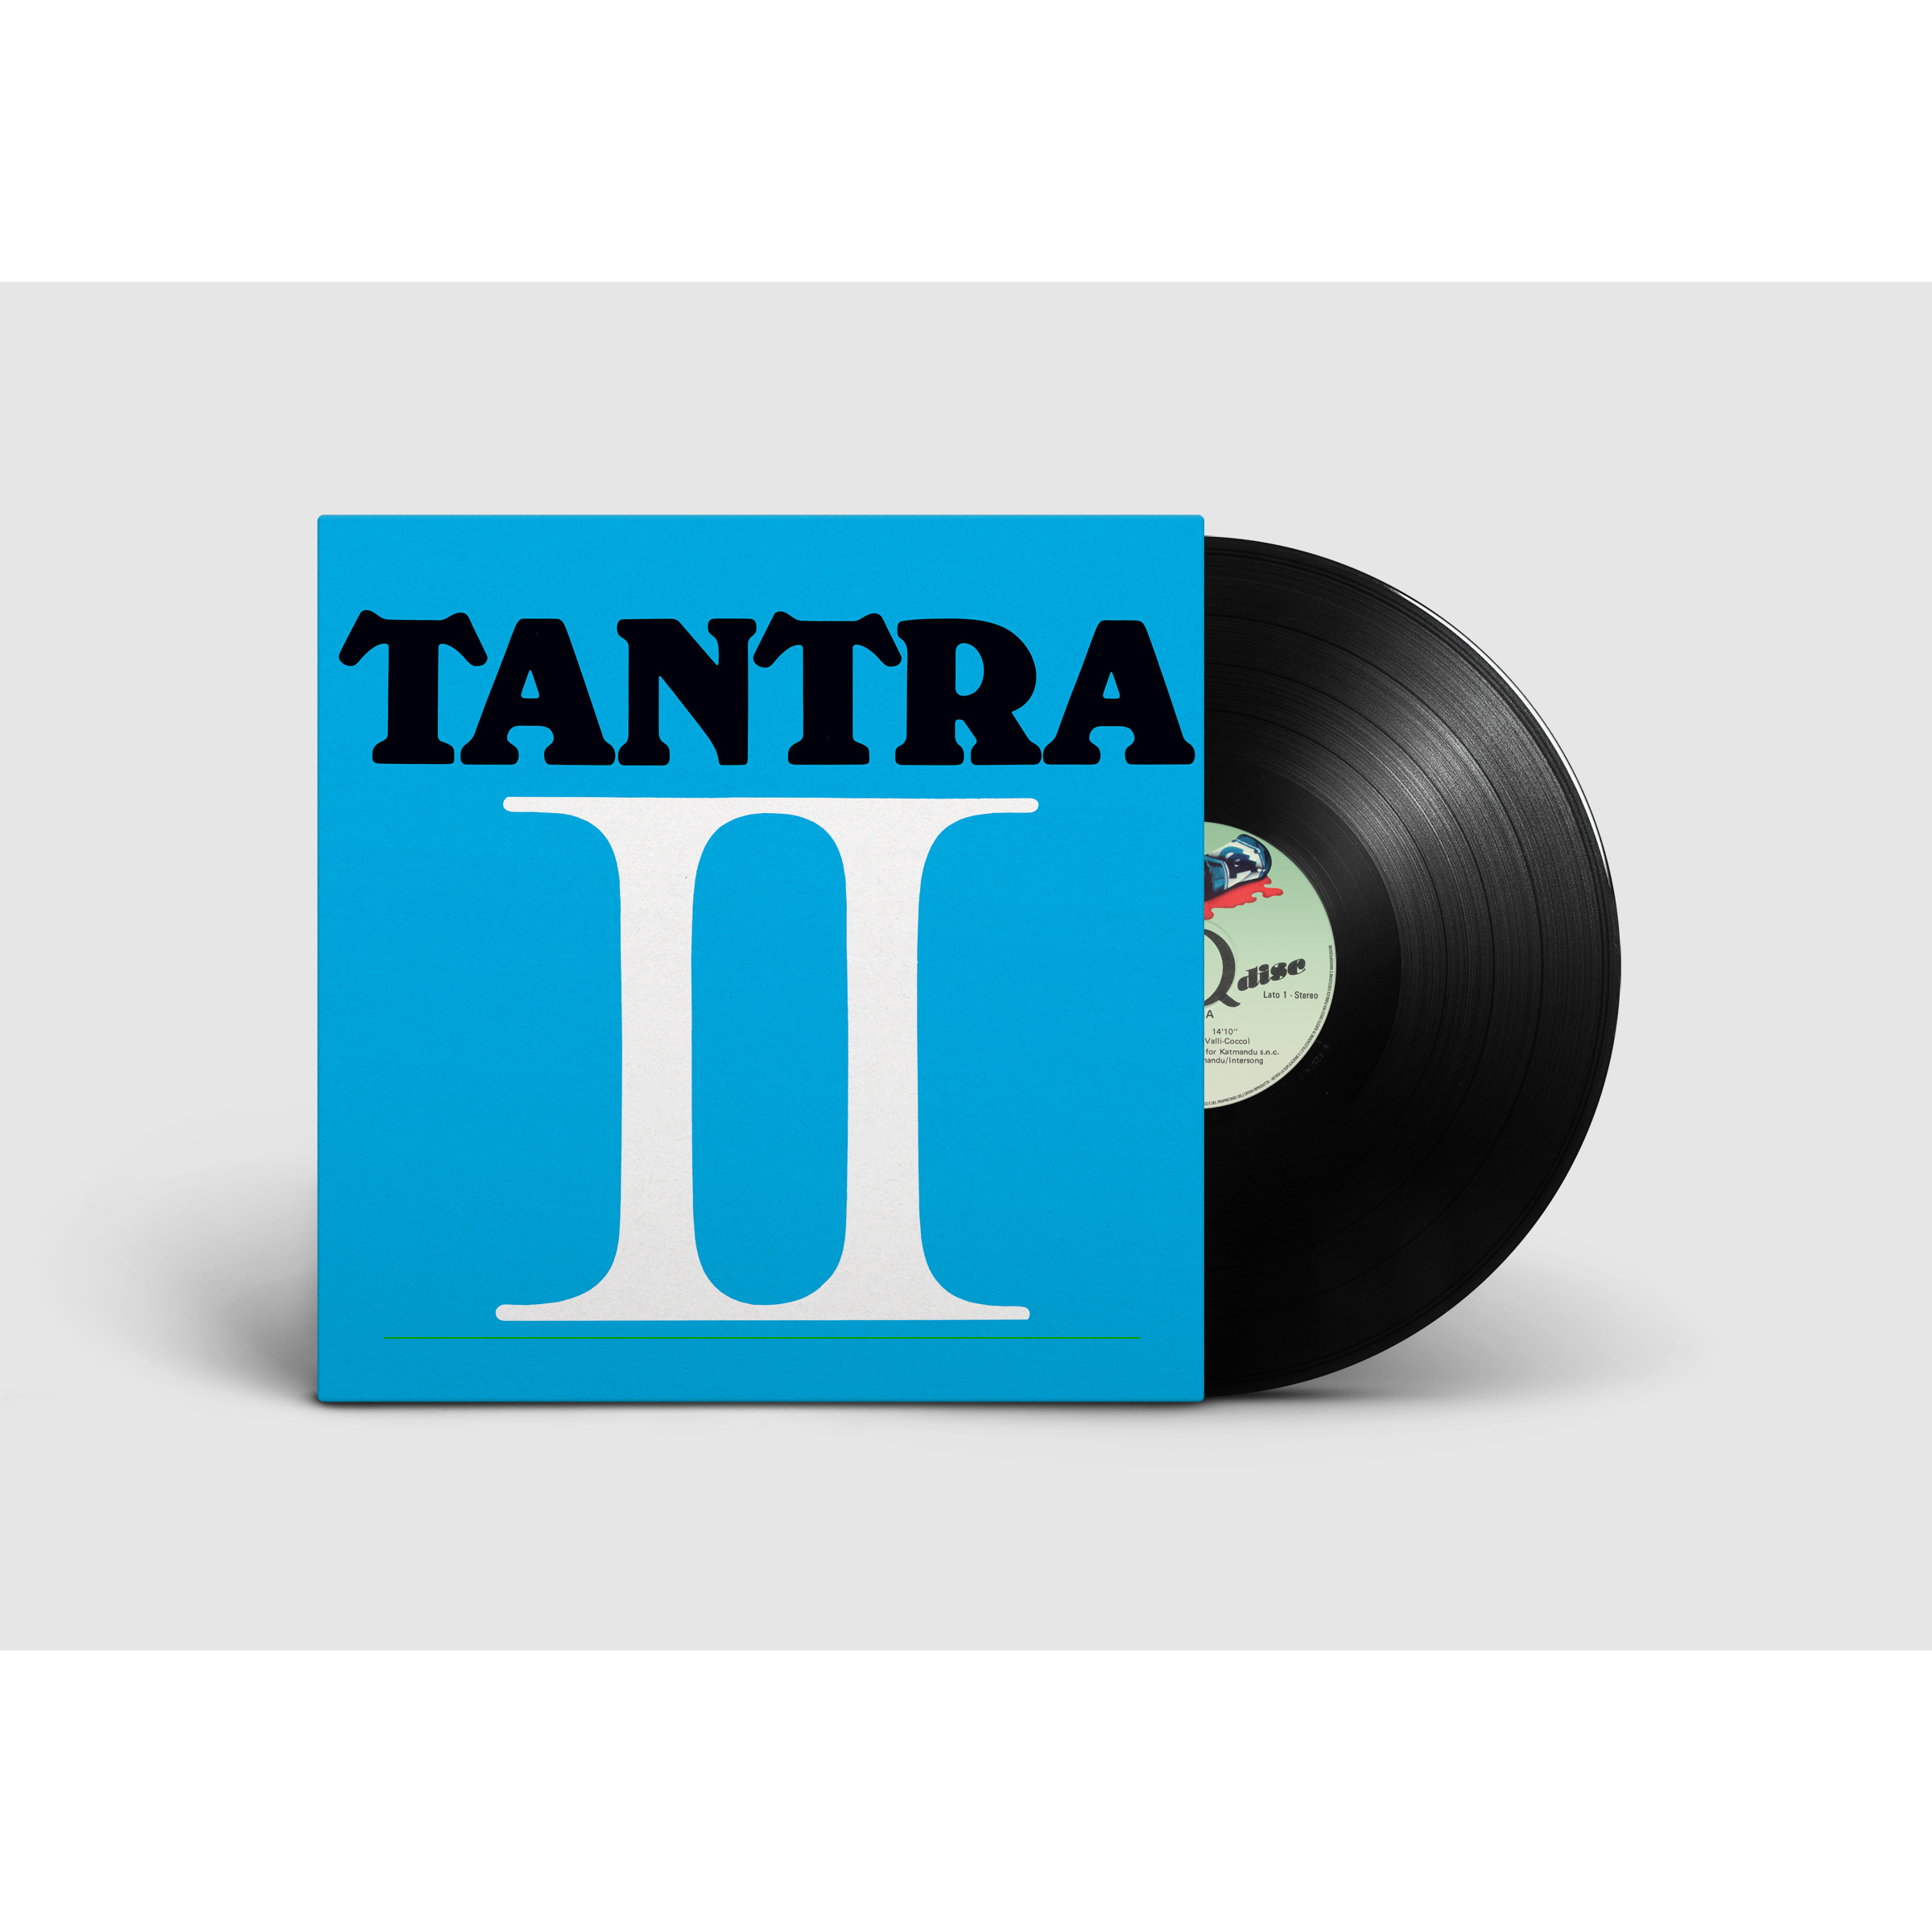 TANTRA 2 - LP  180 GR. NERO NUMERATO